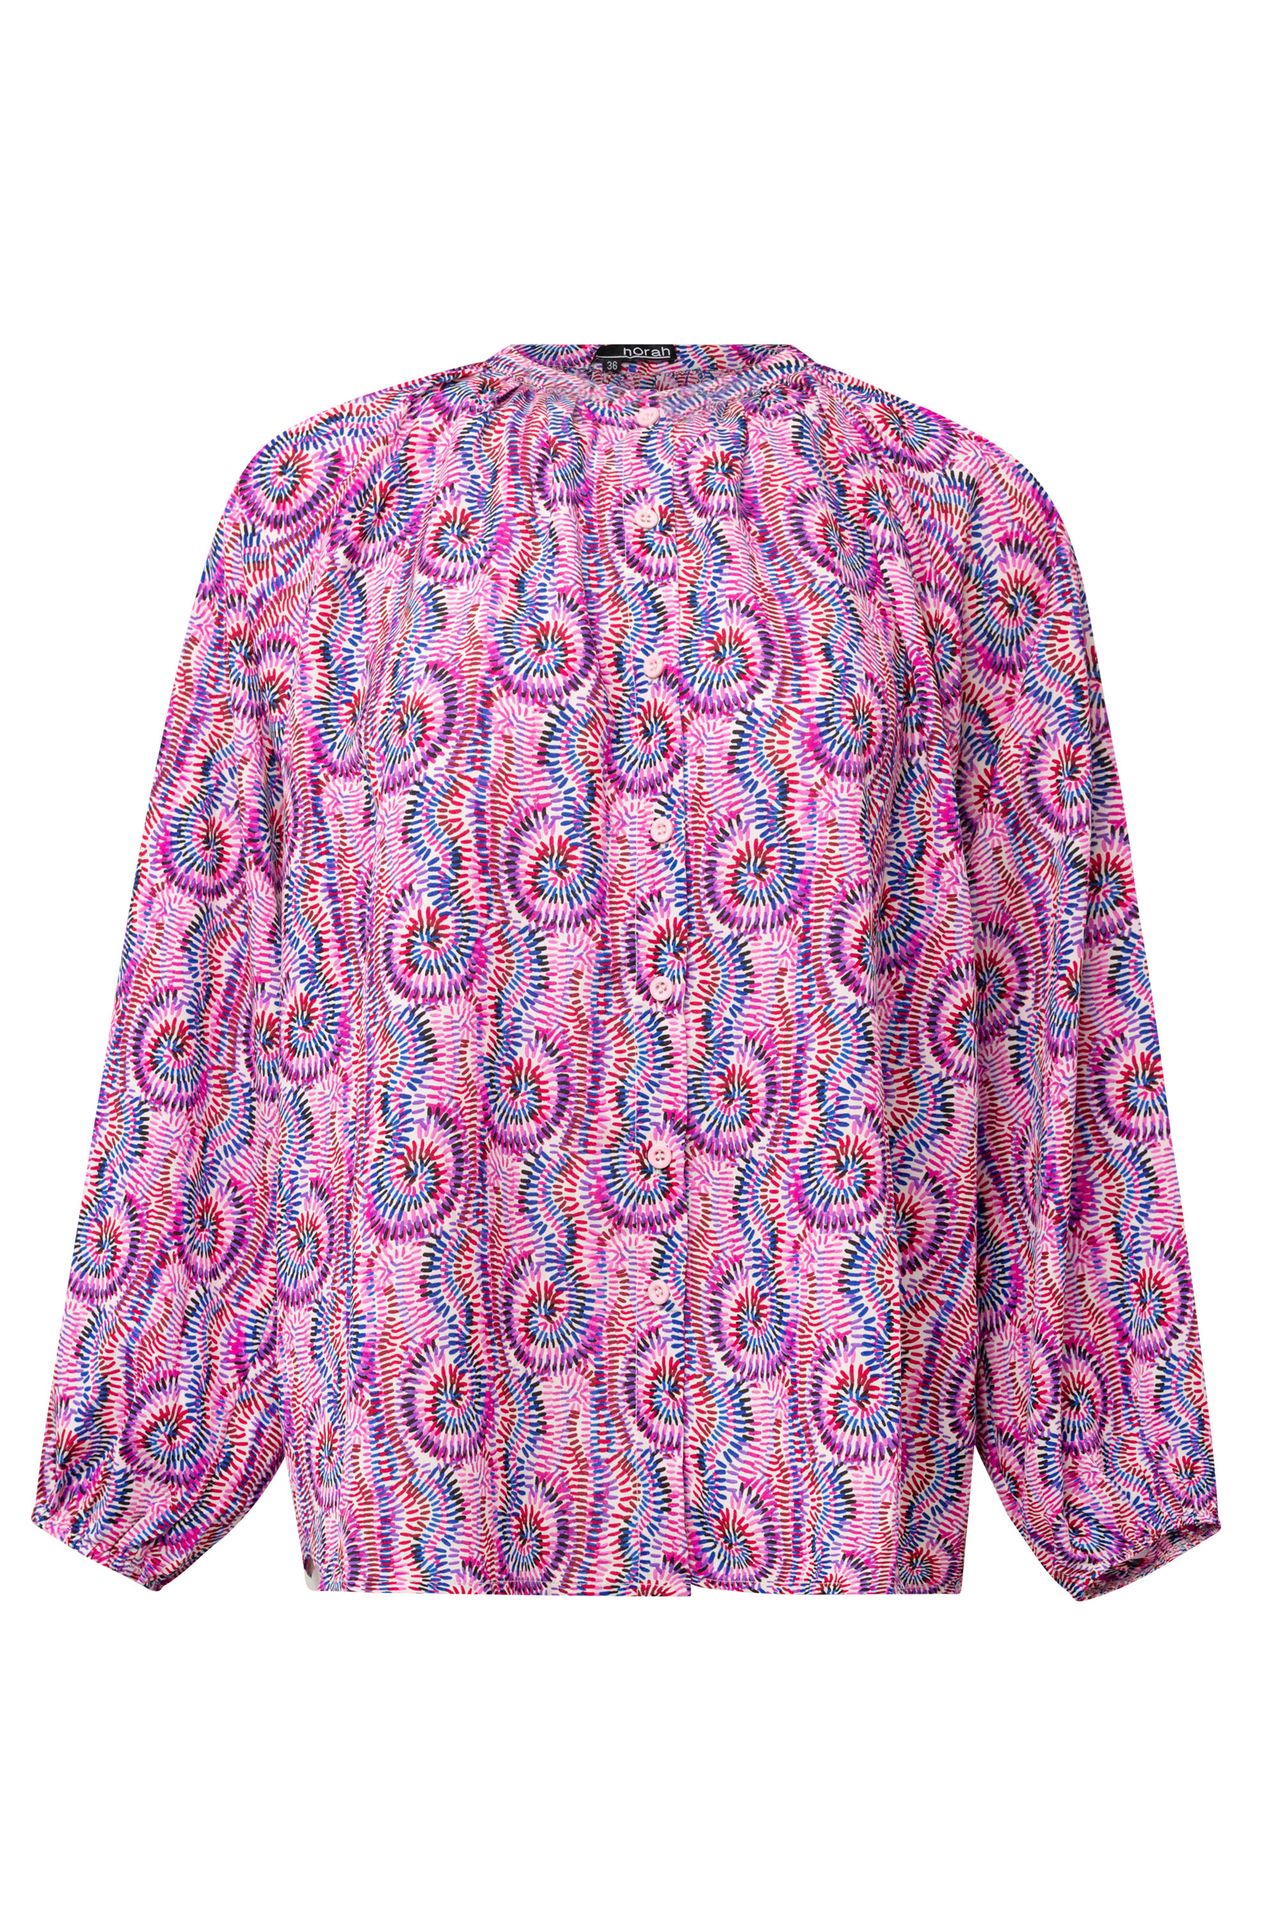 Norah Meerkleurige grafische blouse pink multicolor 214087-920